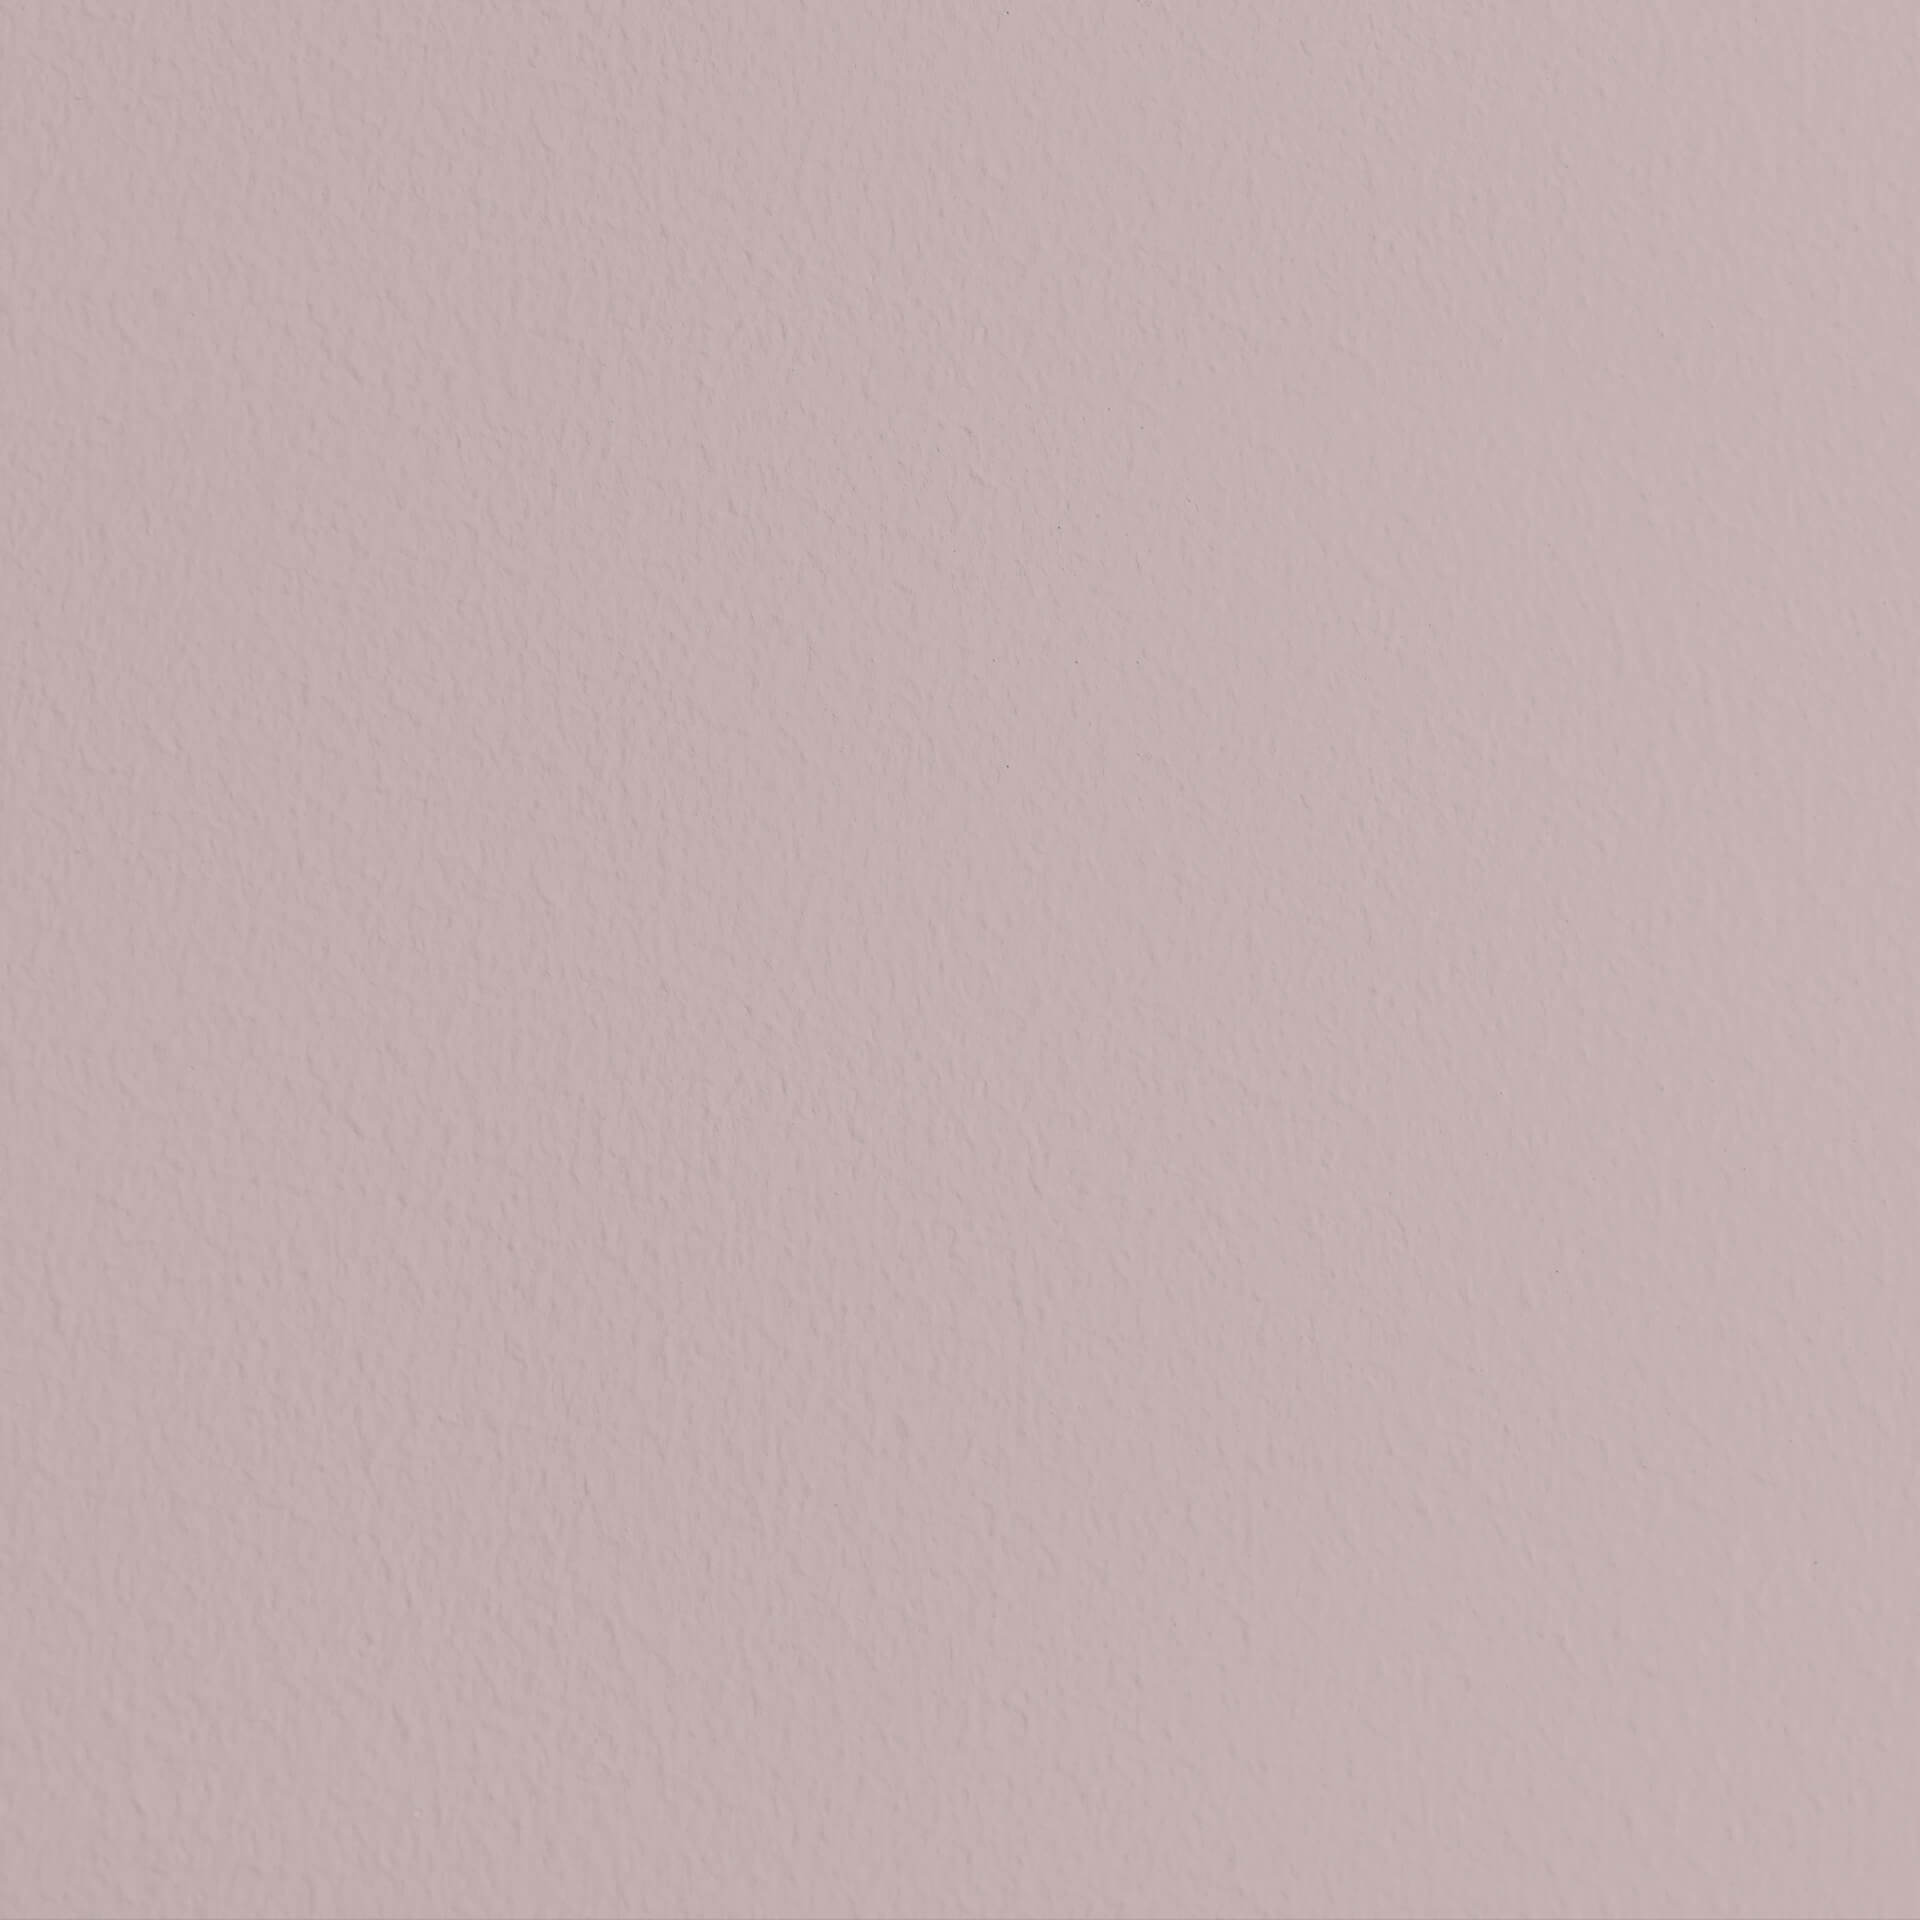 Mylands Pale Lilac No. 246 - Wood & Metal Gloss / Lack Glänzend, 2.5L